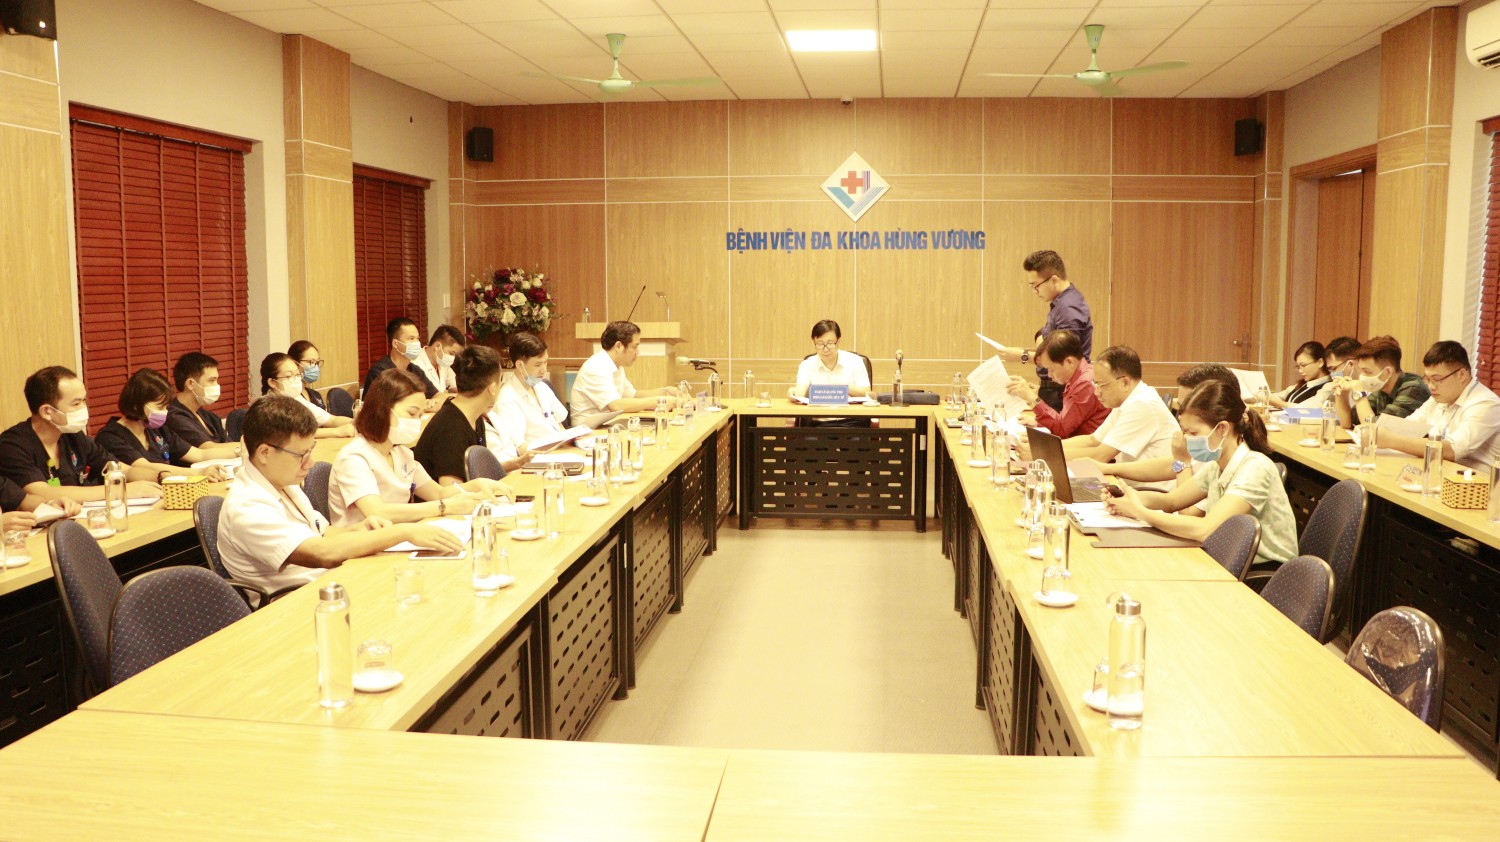 Bệnh viện đa khoa Hùng Vương đạt tiêu chuẩn bệnh viện an toàn trong công tác phòng chống dịch COVID-19